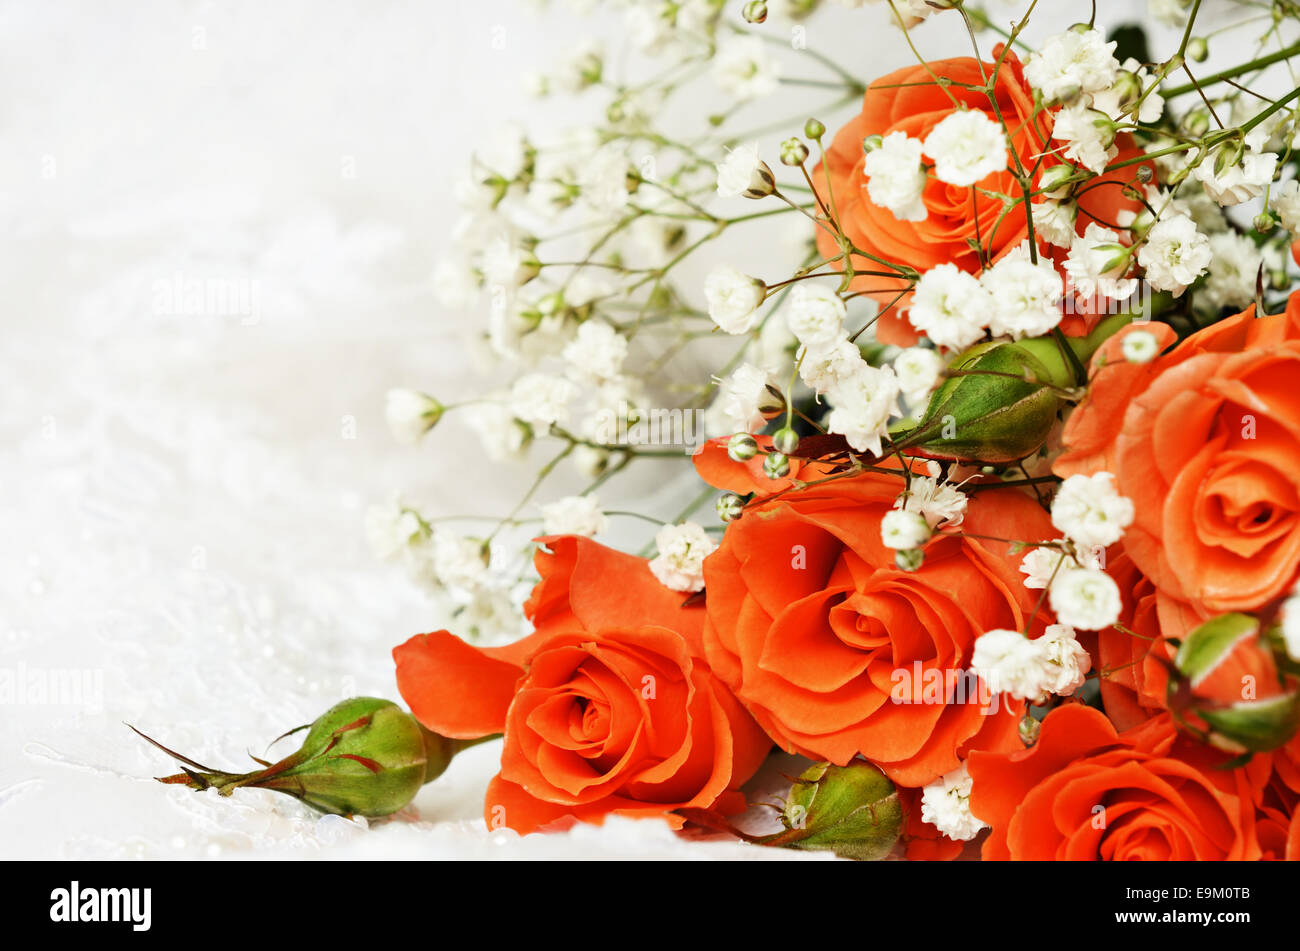 Những bông hoa hồng cam tinh tế và đẹp mắt được sắp xếp trên nền cưới trắng sẽ khiến bức ảnh của bạn trở nên thật tuyệt vời và đầy ý nghĩa. Hãy đắm chìm trong không gian lãng mạn và thần tiên của ngày cưới với ảnh của bạn.